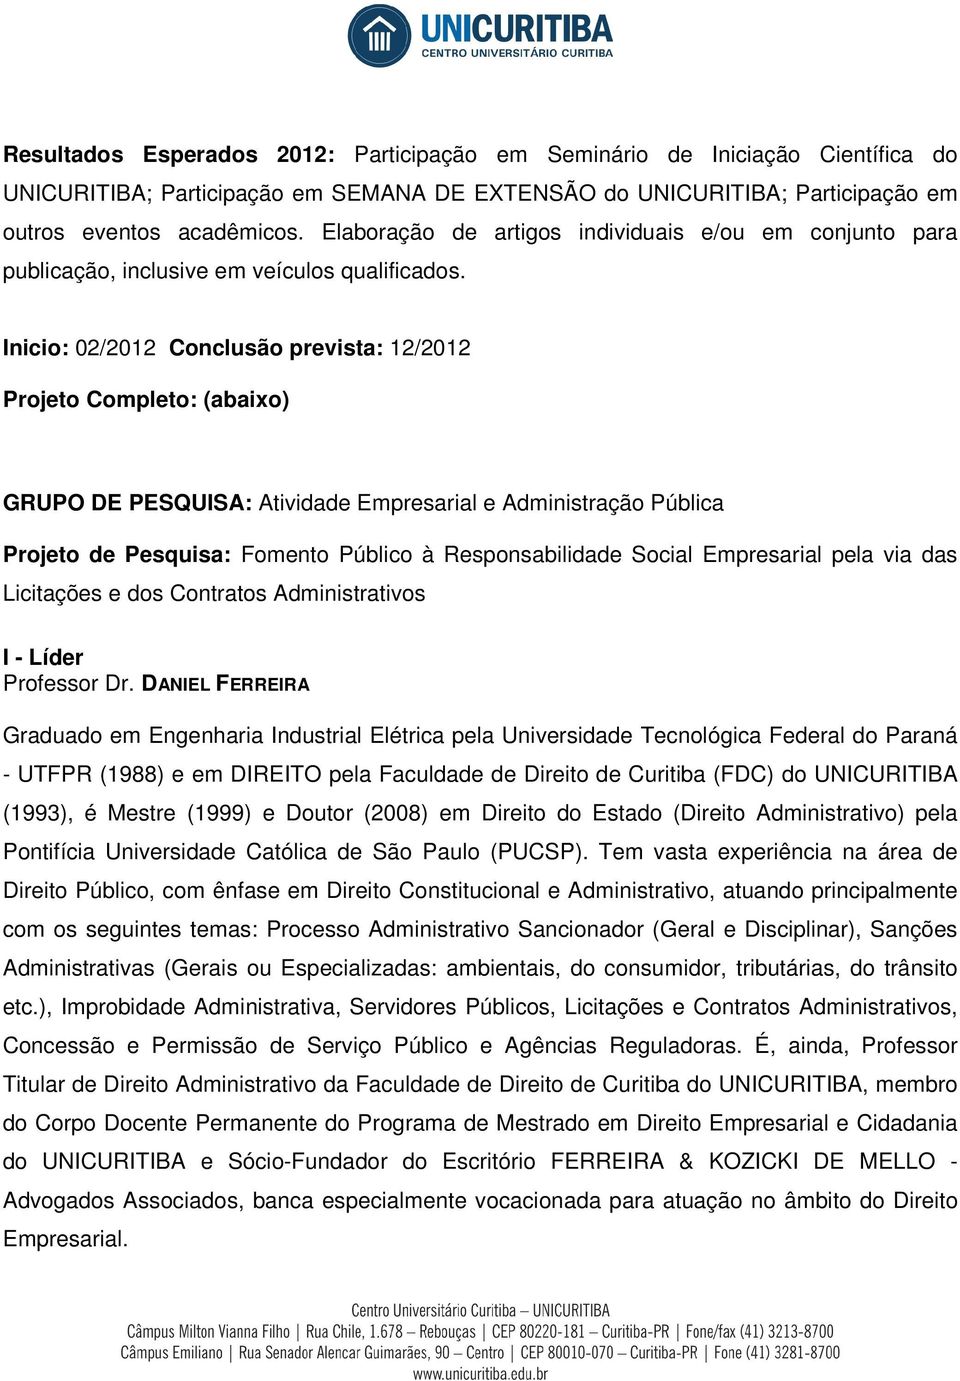 Inicio: 02/2012 Conclusão prevista: 12/2012 Projeto Completo: (abaixo) GRUPO DE PESQUISA: Atividade Empresarial e Administração Pública Projeto de Pesquisa: Fomento Público à Responsabilidade Social